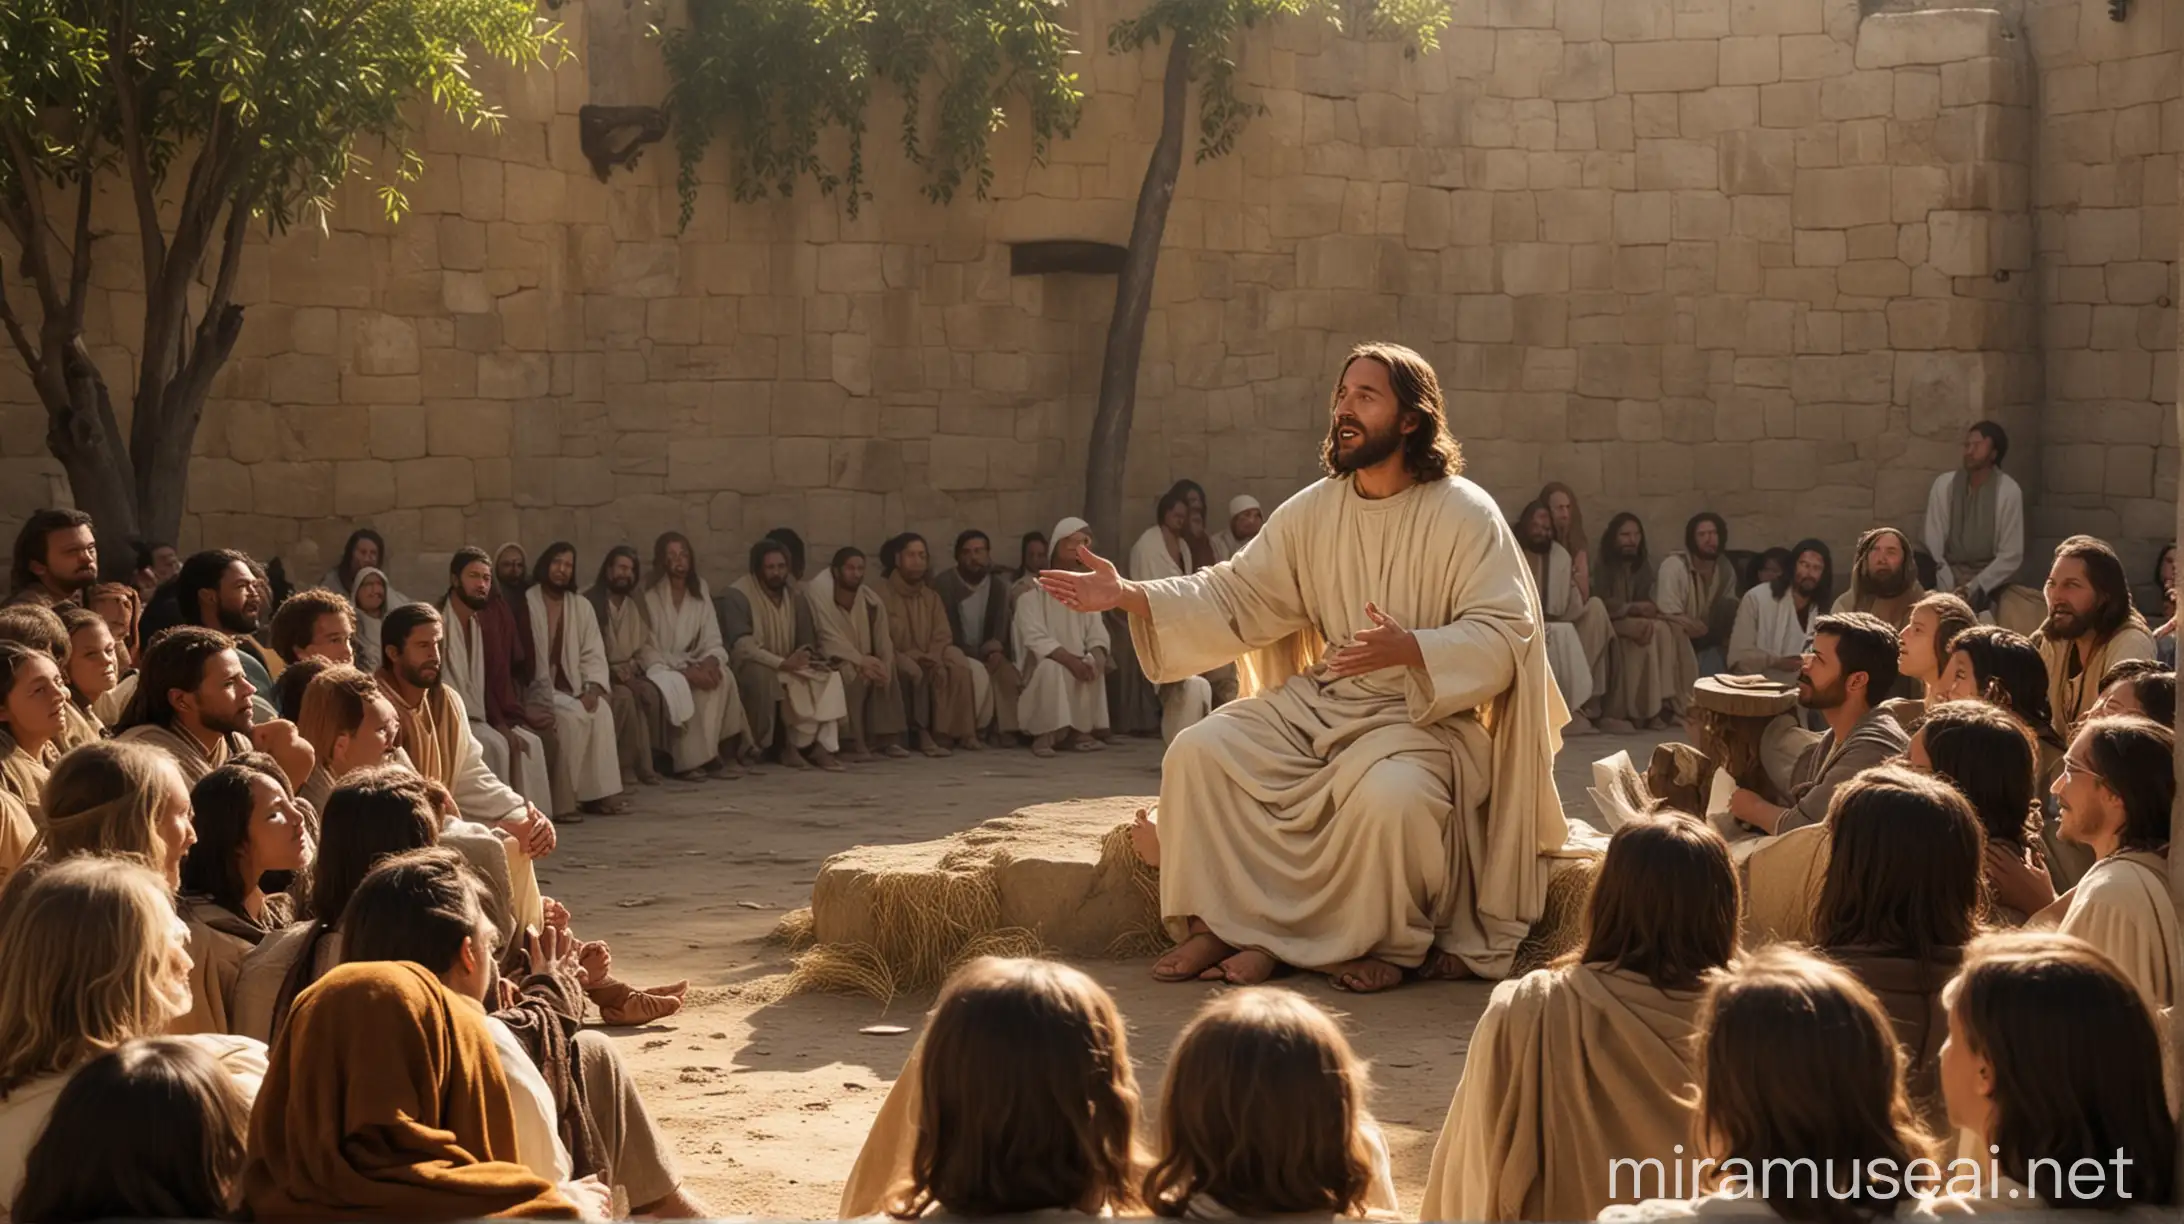 Jesus Preaching Sermon to Multitude